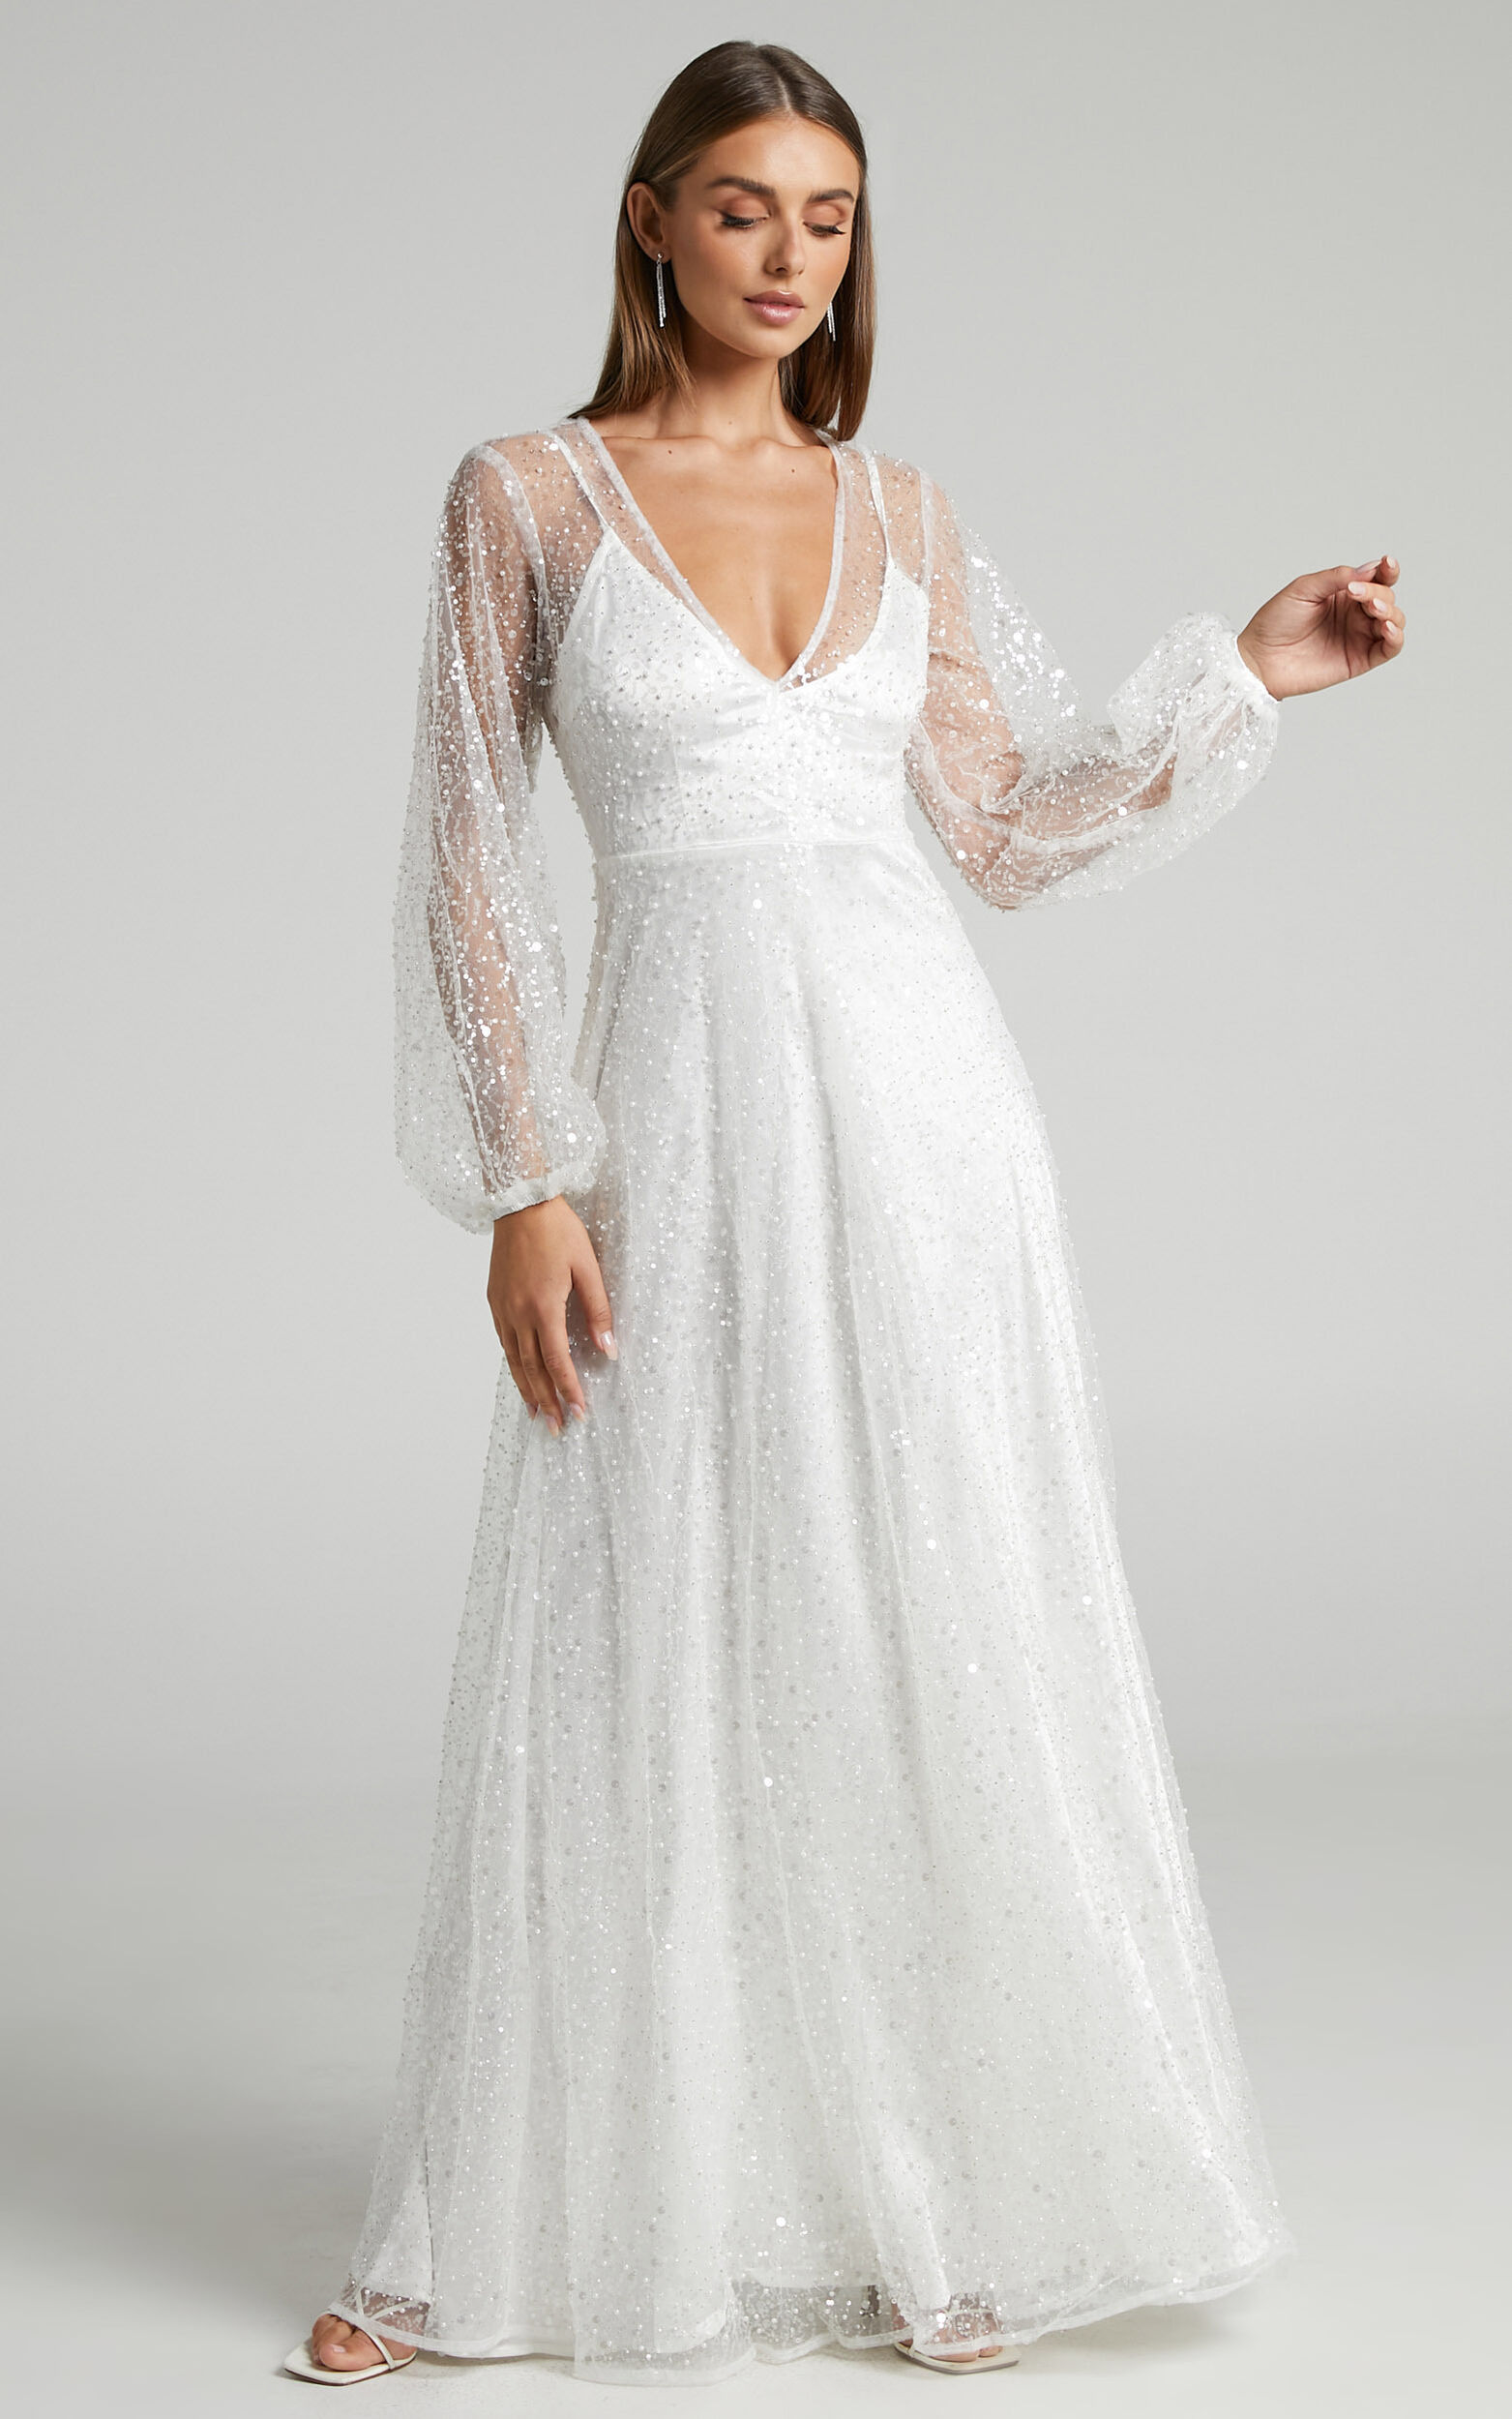 Leauna Bridal Gown - Sheer Long Sleeve Deep V Neck Embellished Tulle ...